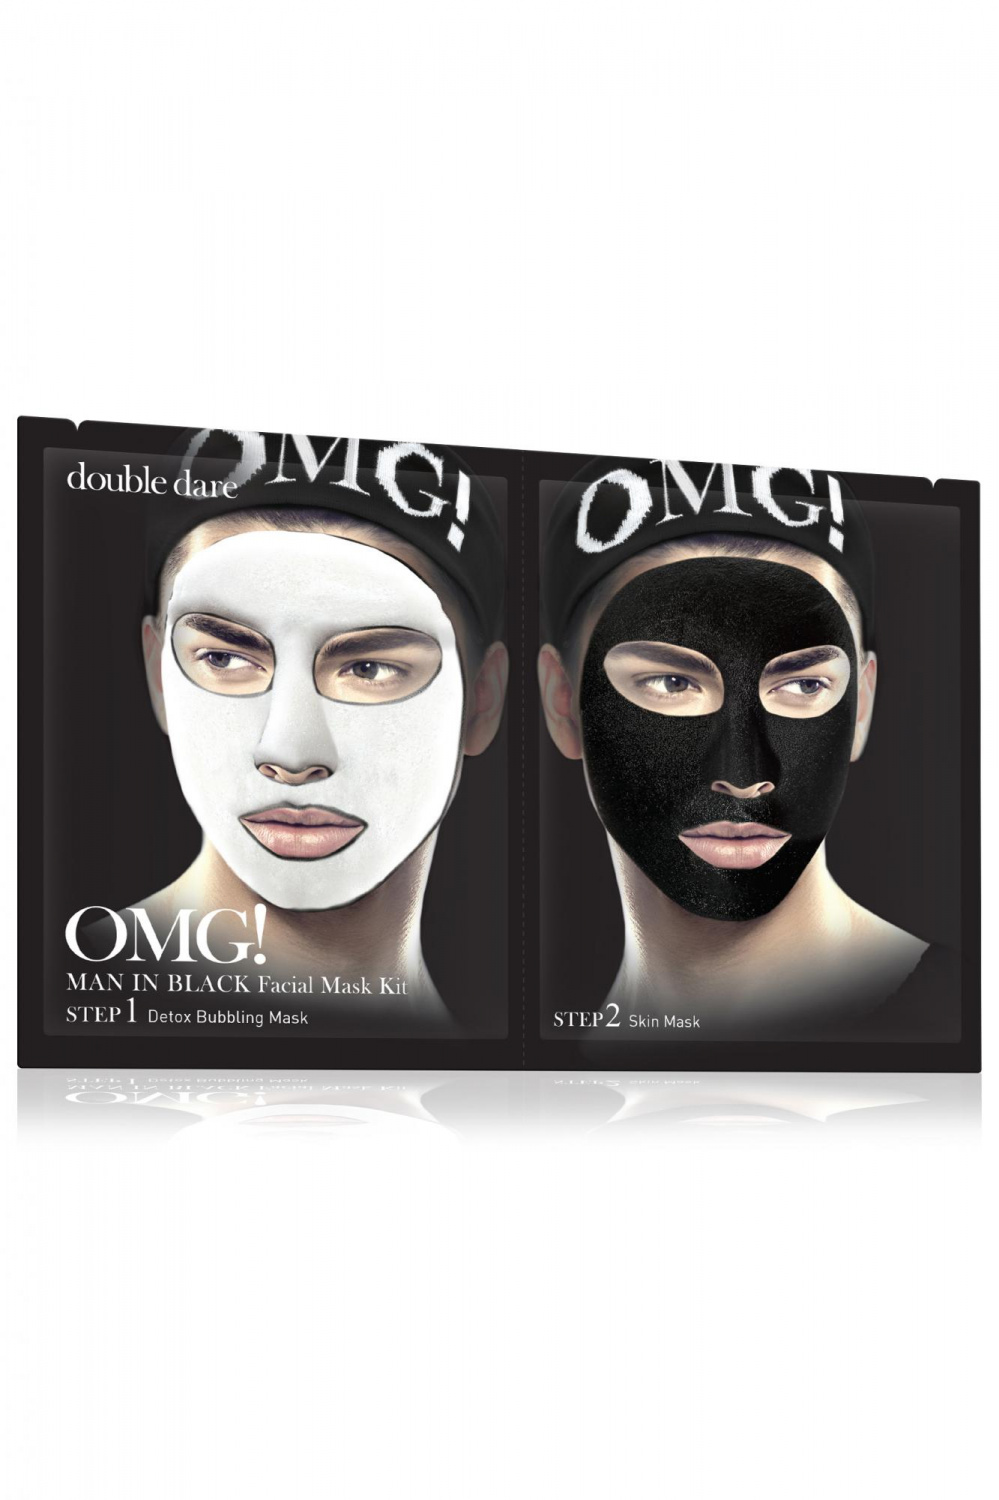 Double Dare OMG! Man In Black Facial Mask Kit - интернет-магазин профессиональной косметики Spadream, изображение 40763